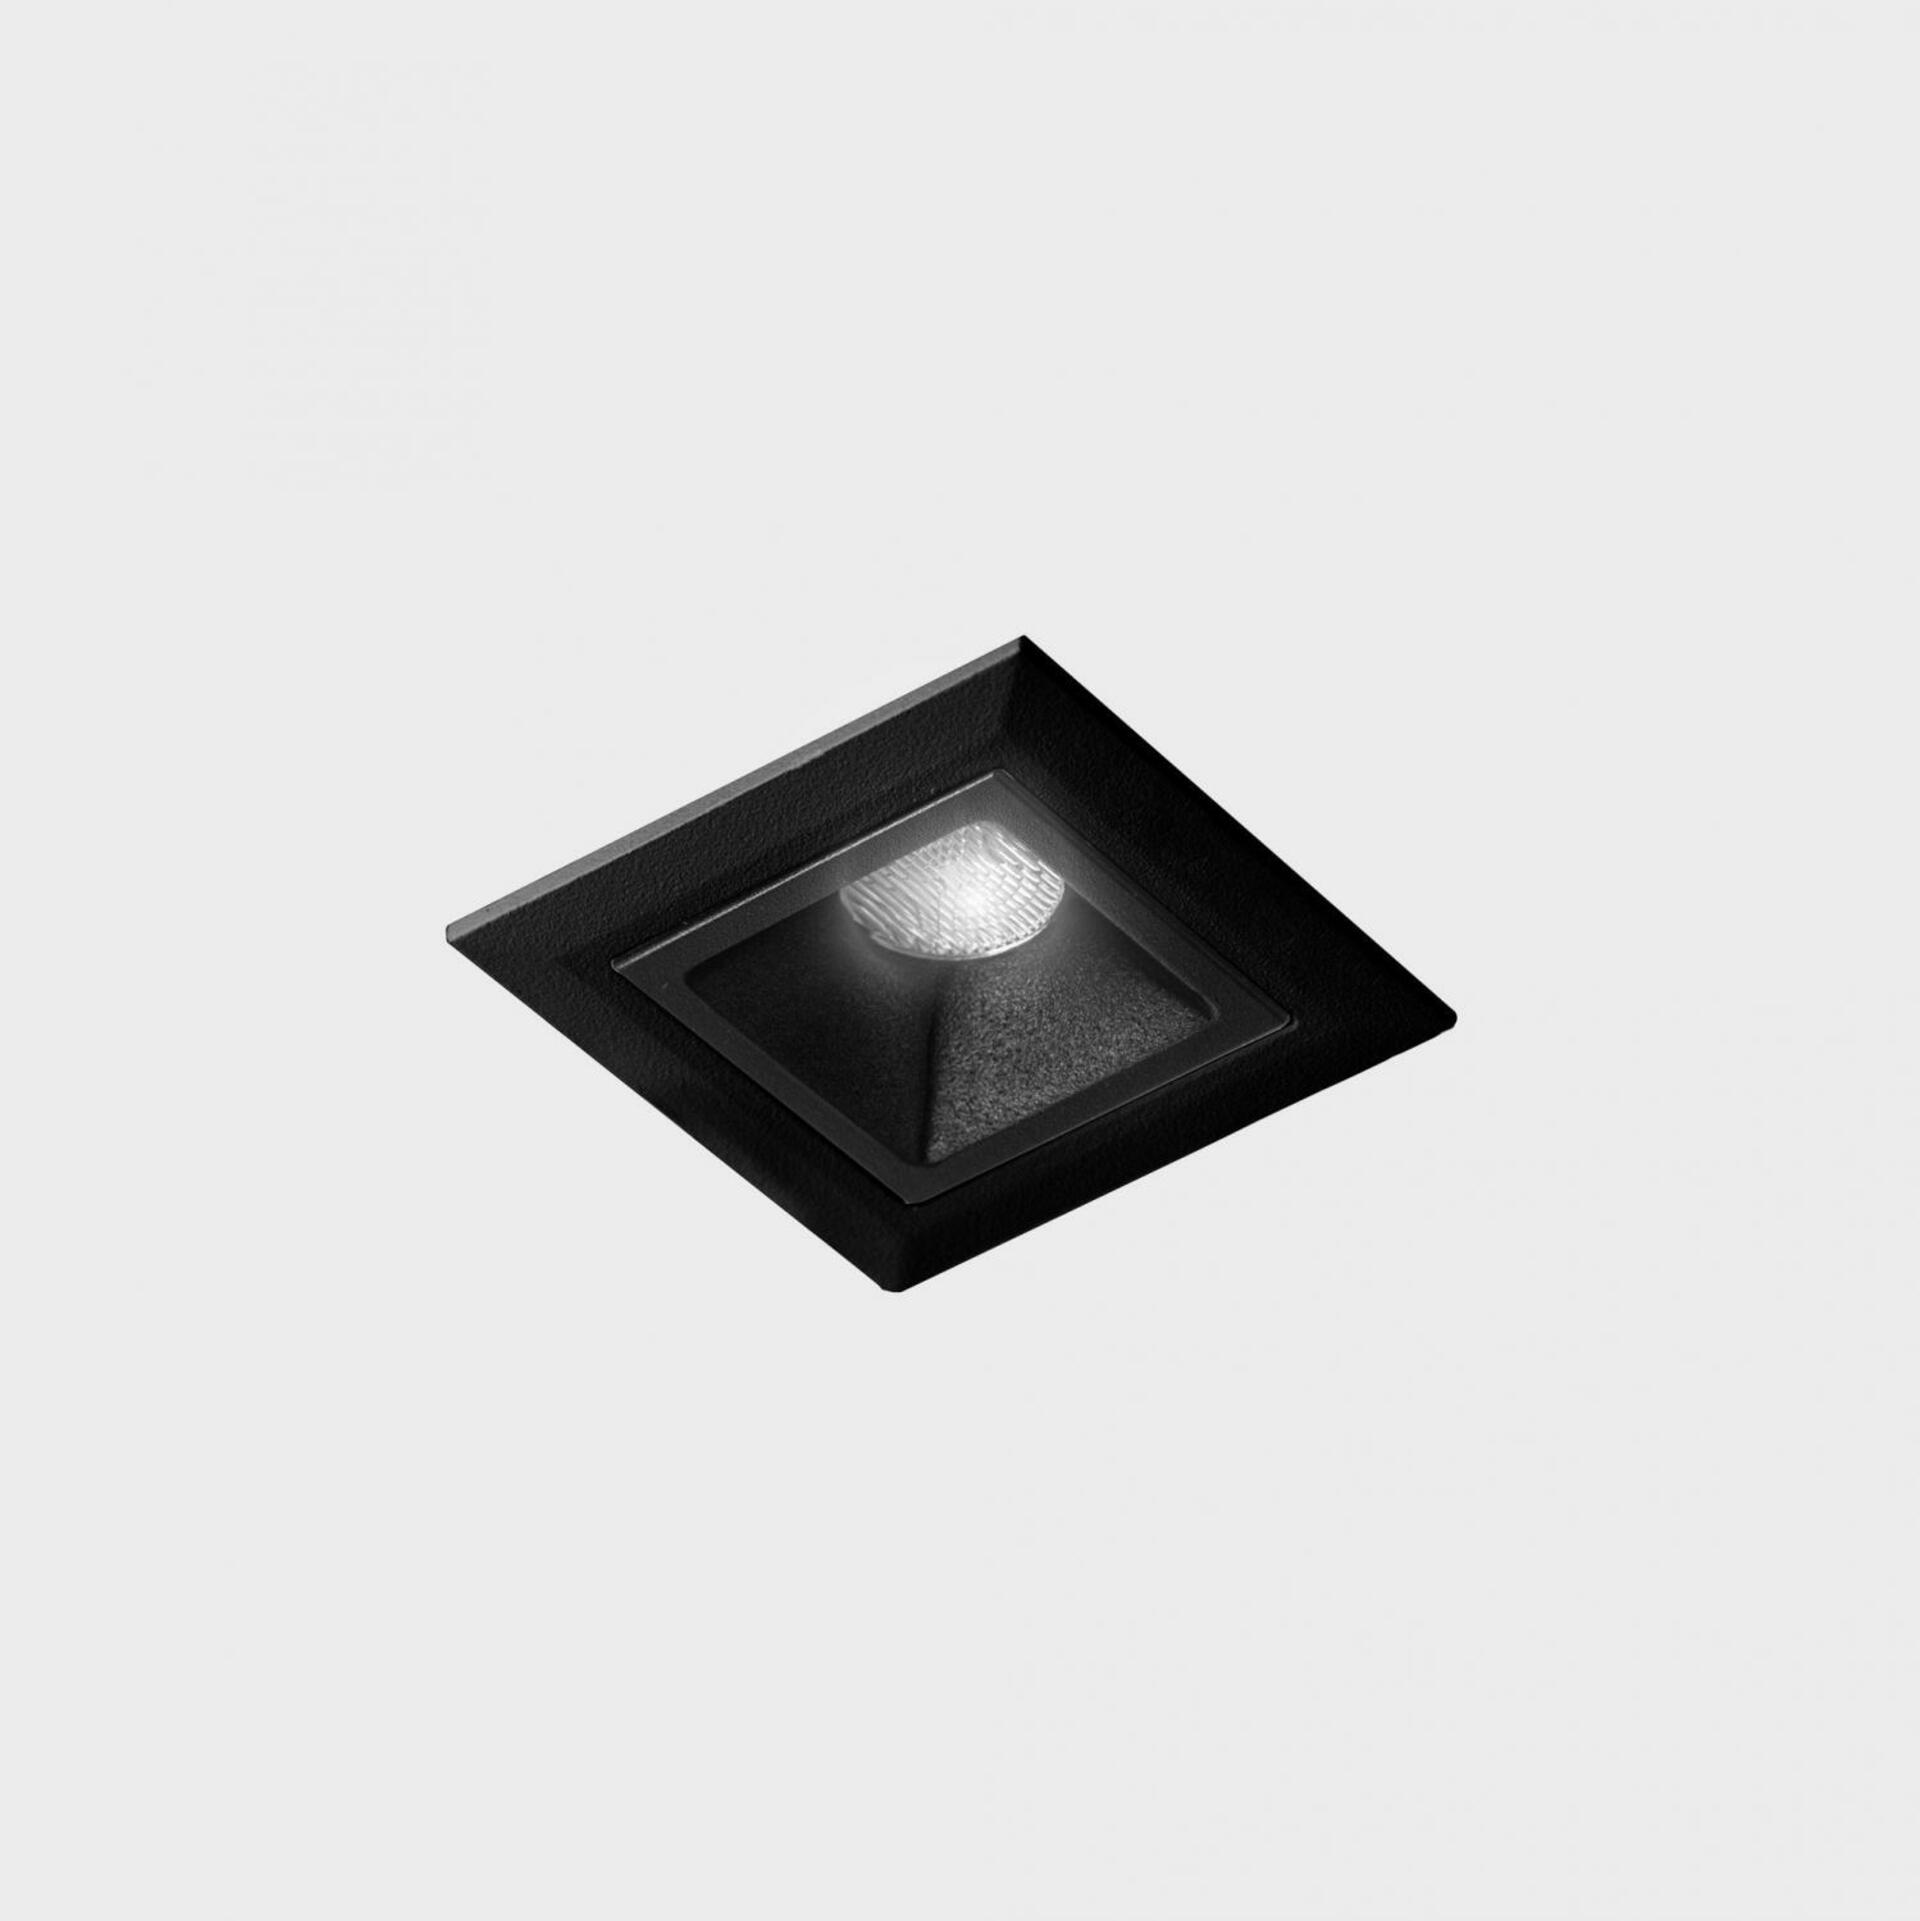 KOHL LIGHTING KOHL-Lighting NSES zapuštěné svítidlo s rámečkem 45x45 mm černá 2 W CRI 90 3000K DALI